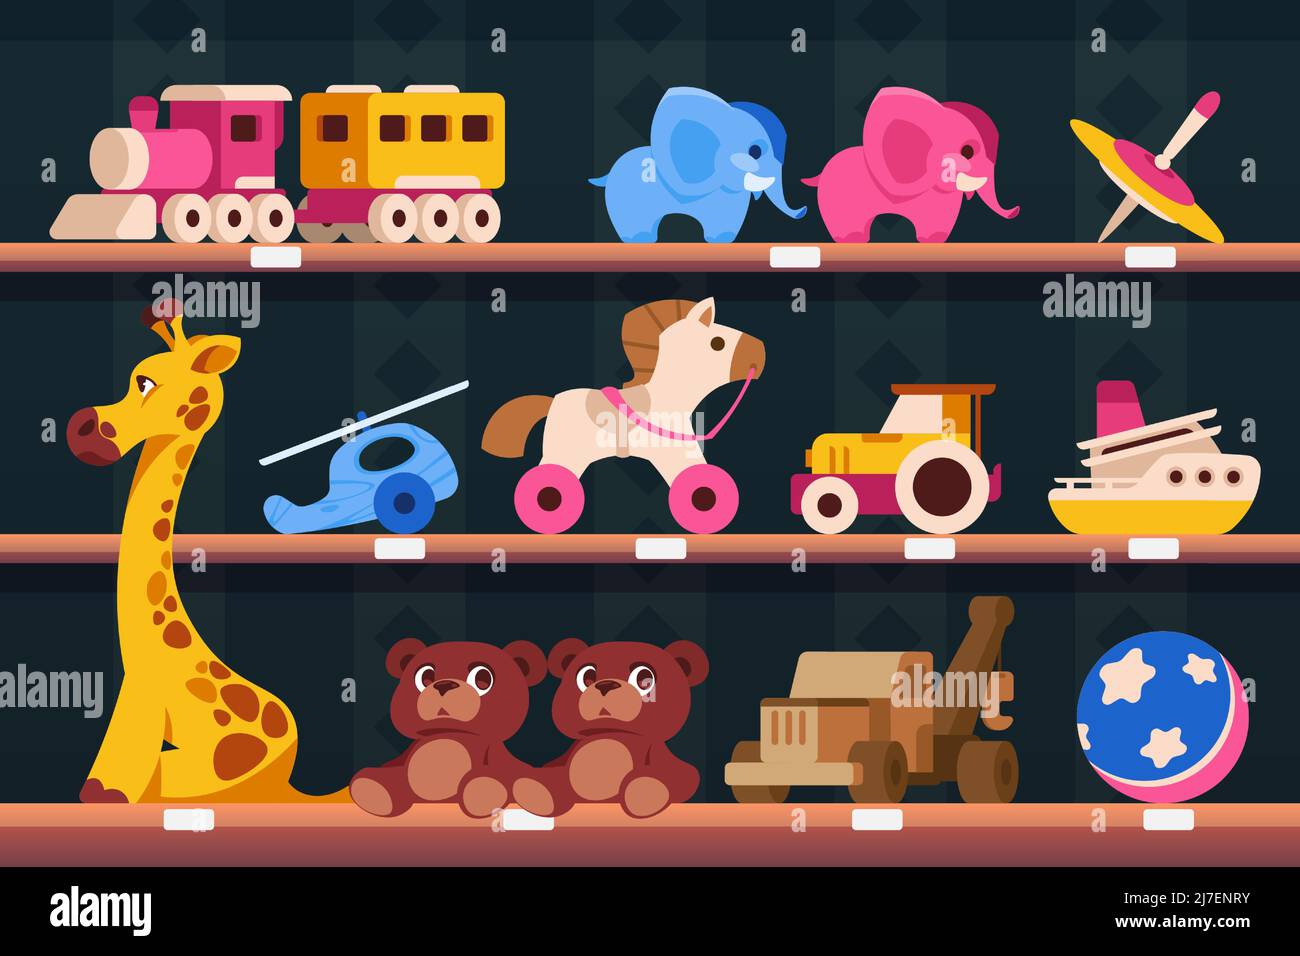 Regal mit Spielzeug. Cartoon-Shop Regale mit bunten Spielzeug für Kinder, verschiedene Transporttiere und Puzzles. Vektor Kinder Toyshop Illustration Stock Vektor